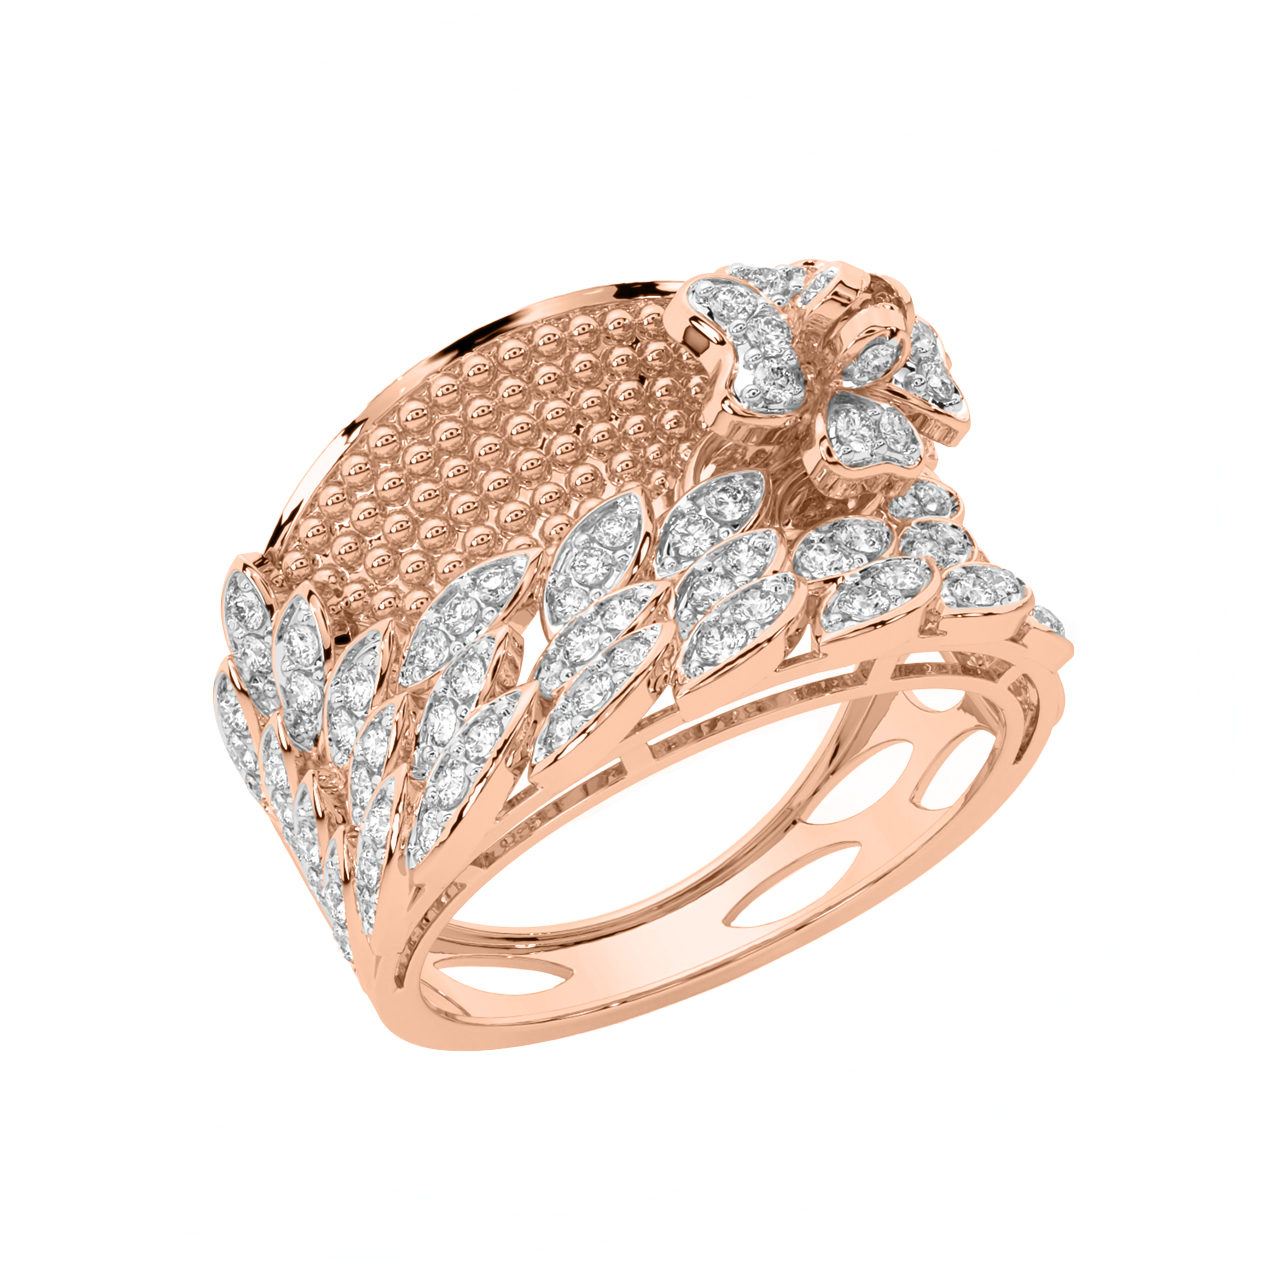 Stylish Autumn Gold Diamond Ring